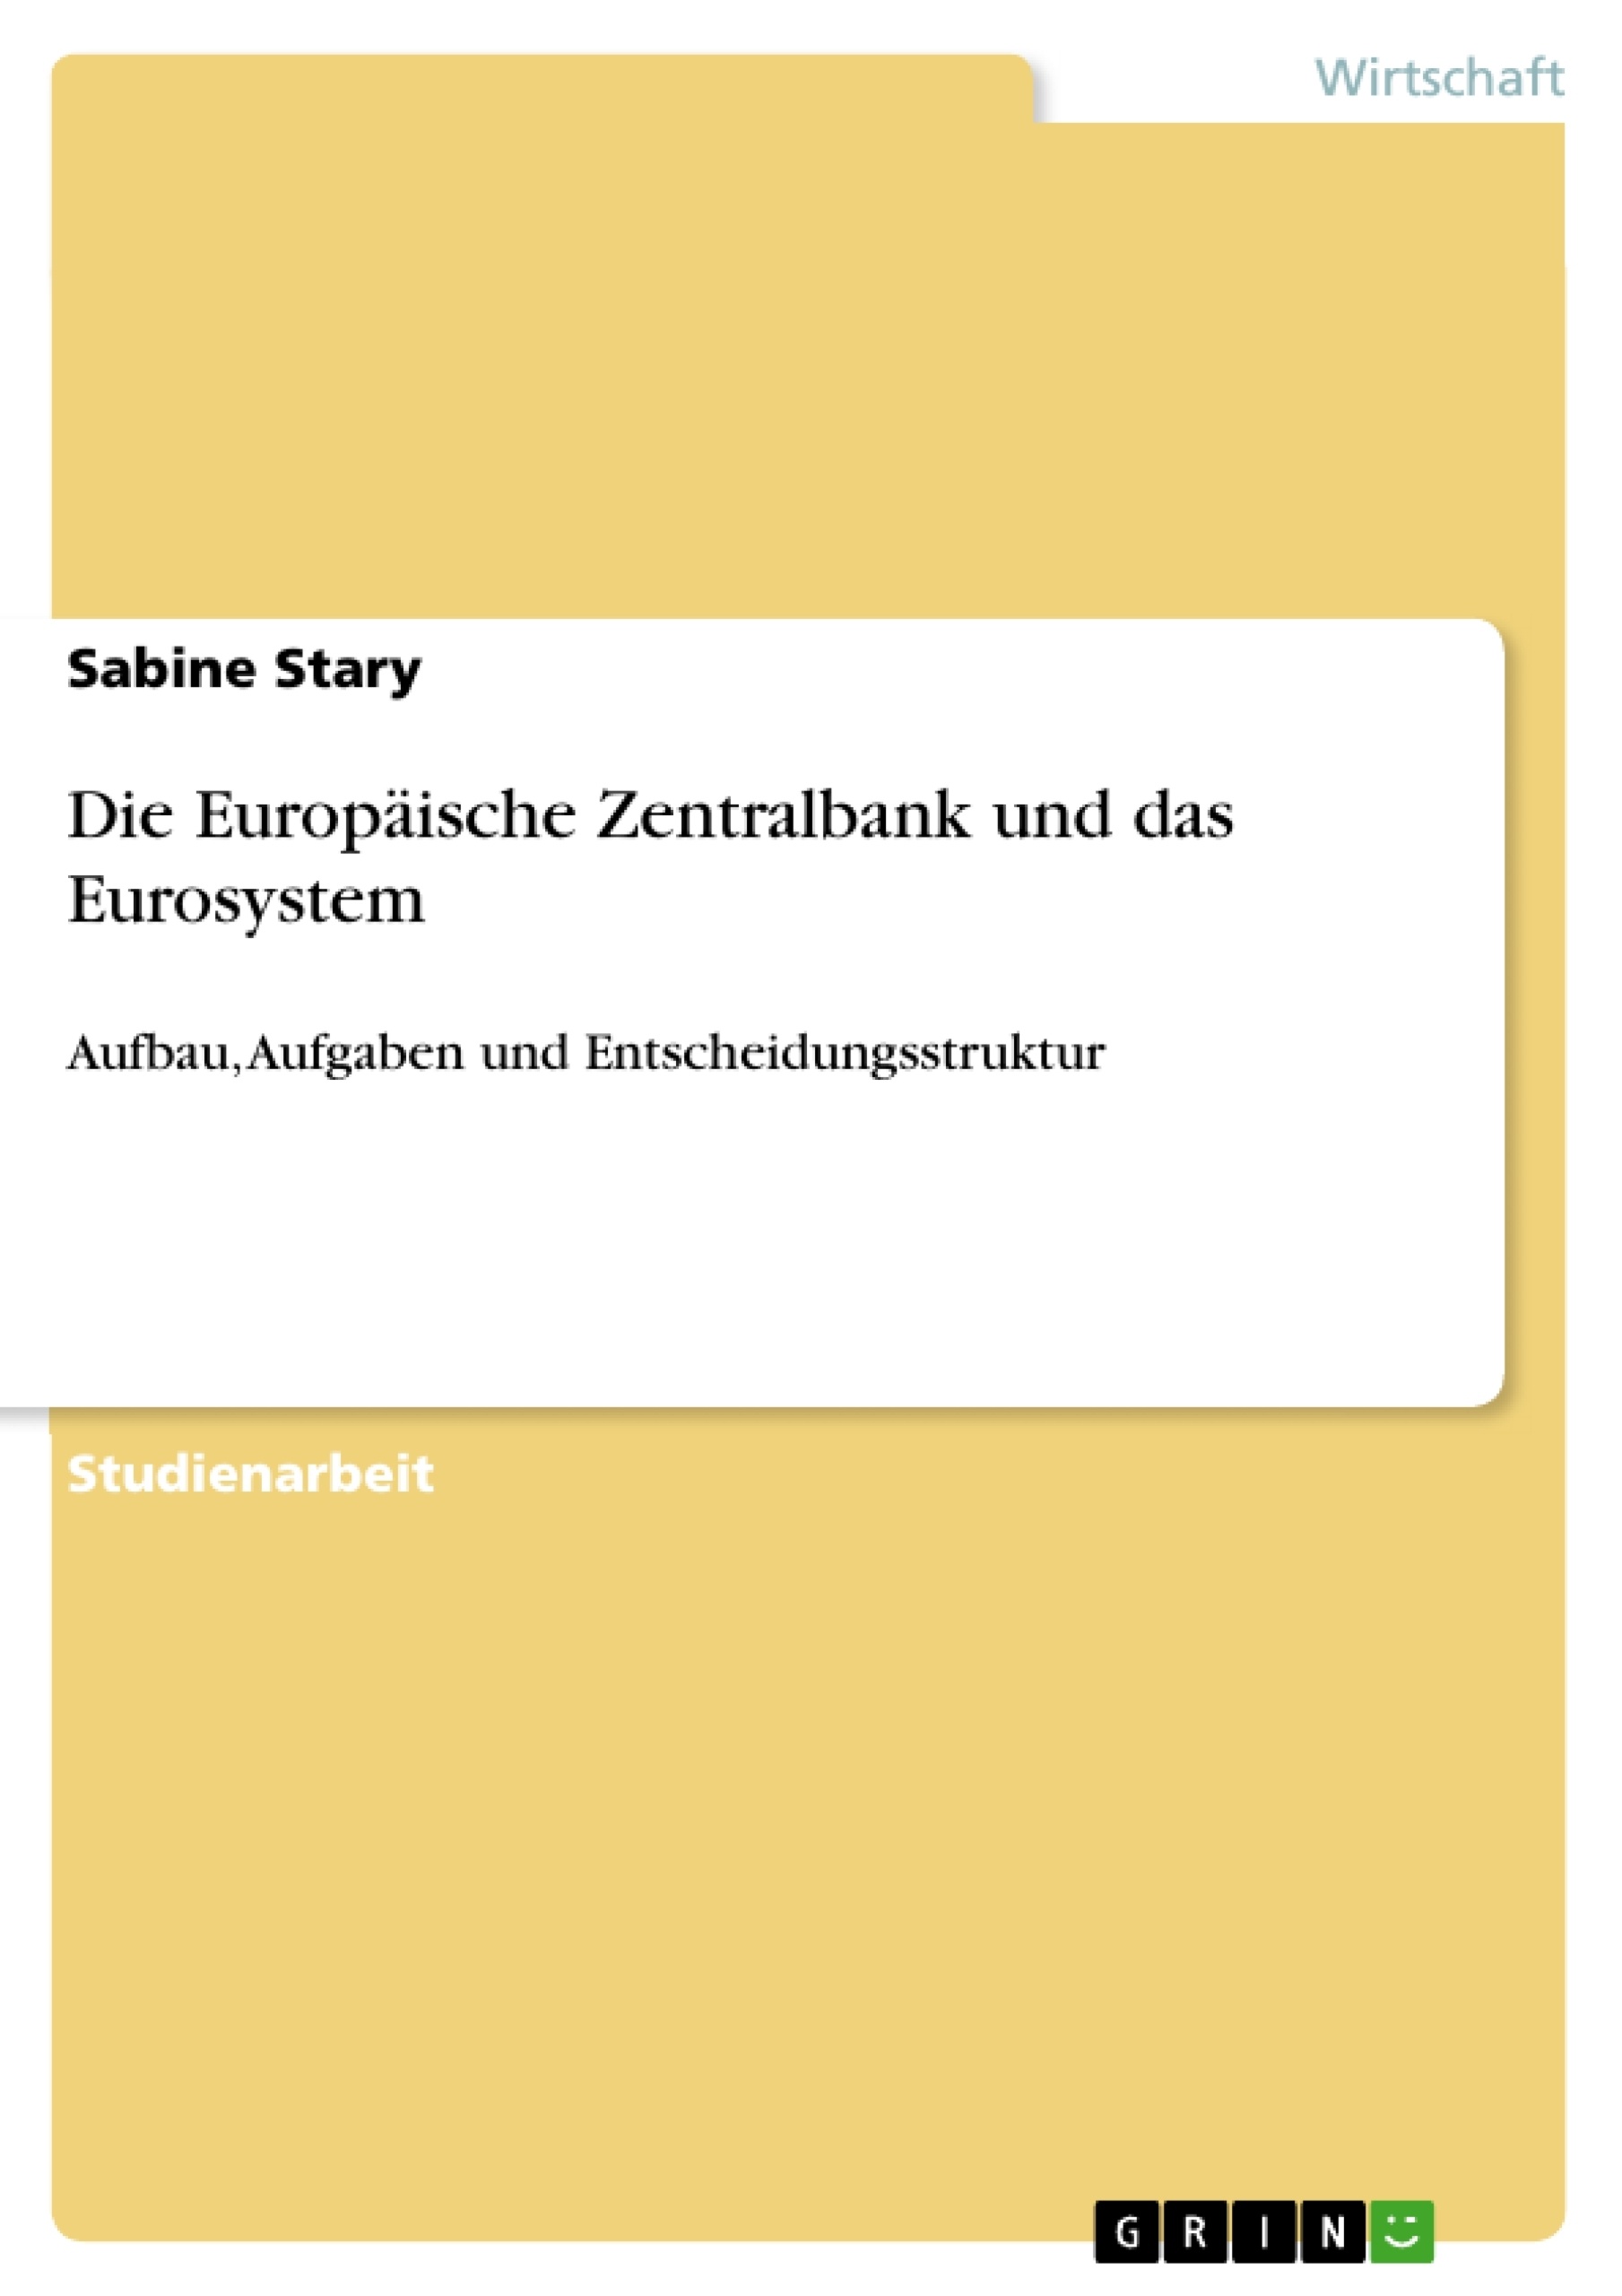 Title: Die Europäische Zentralbank und das Eurosystem